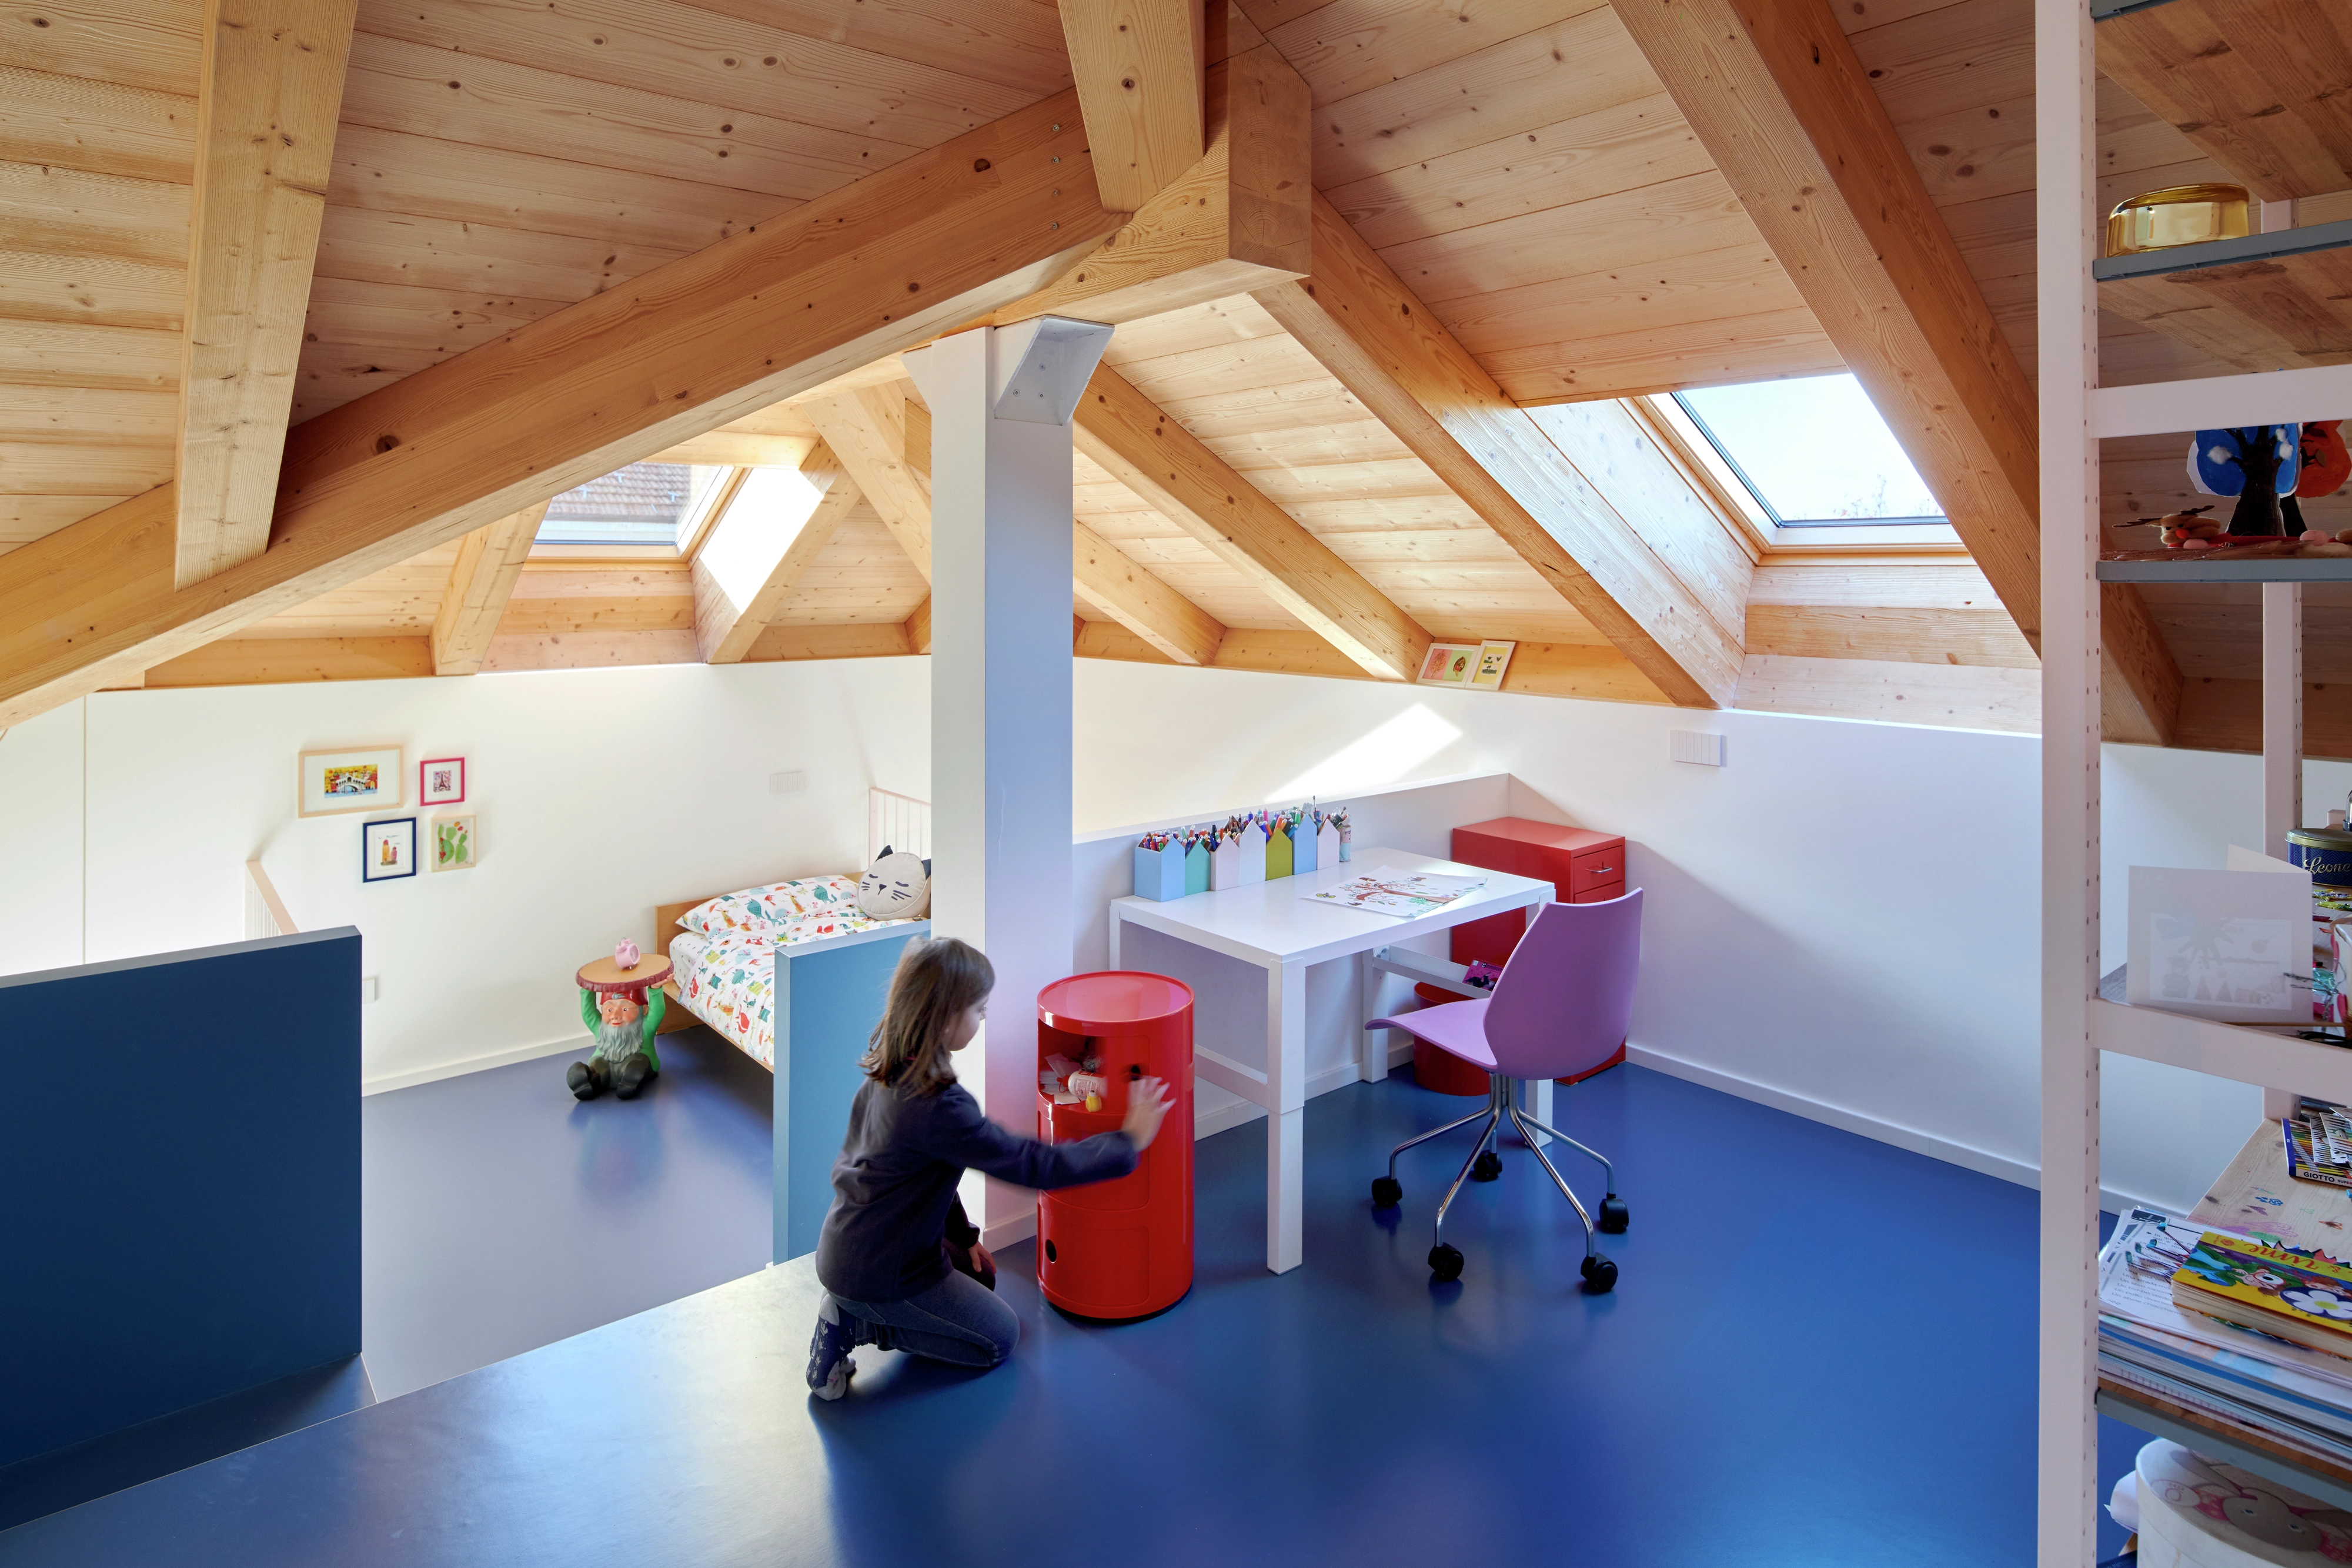 Sala giochi per bambini in mansarda con finestre per tetti VELUX, travi in legno e mobili colorati.